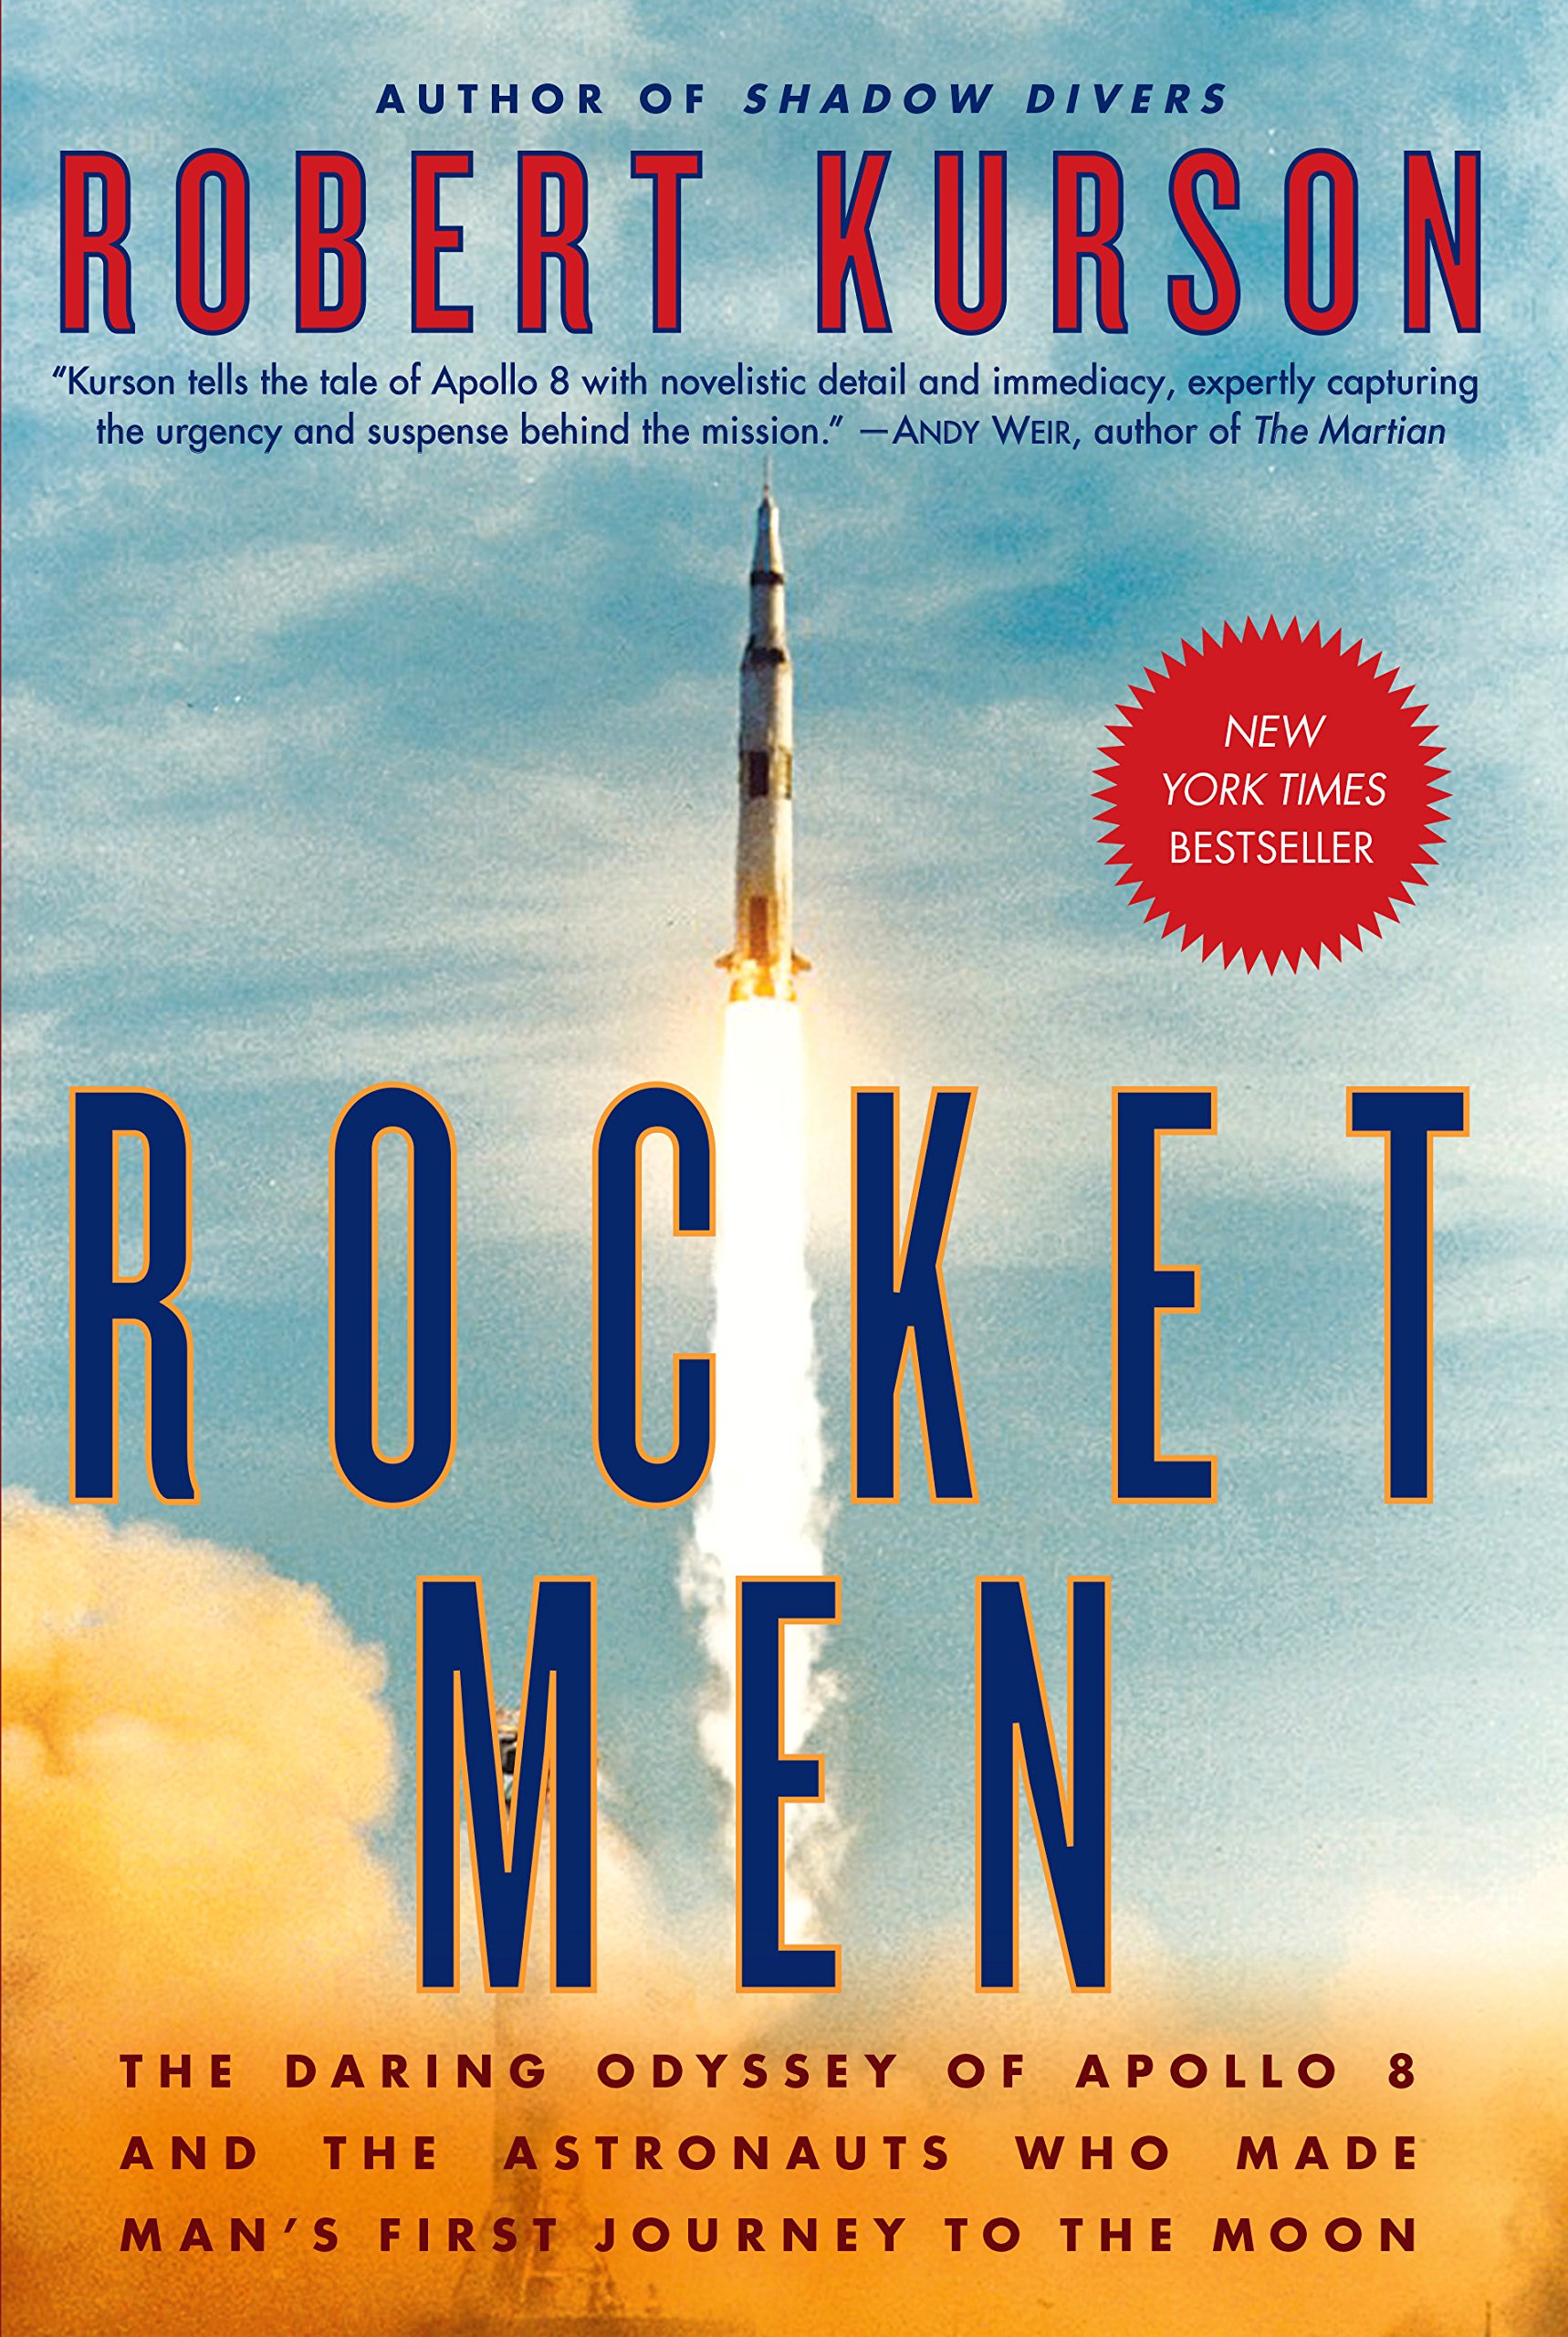 Rocket Men by Robert Kurson